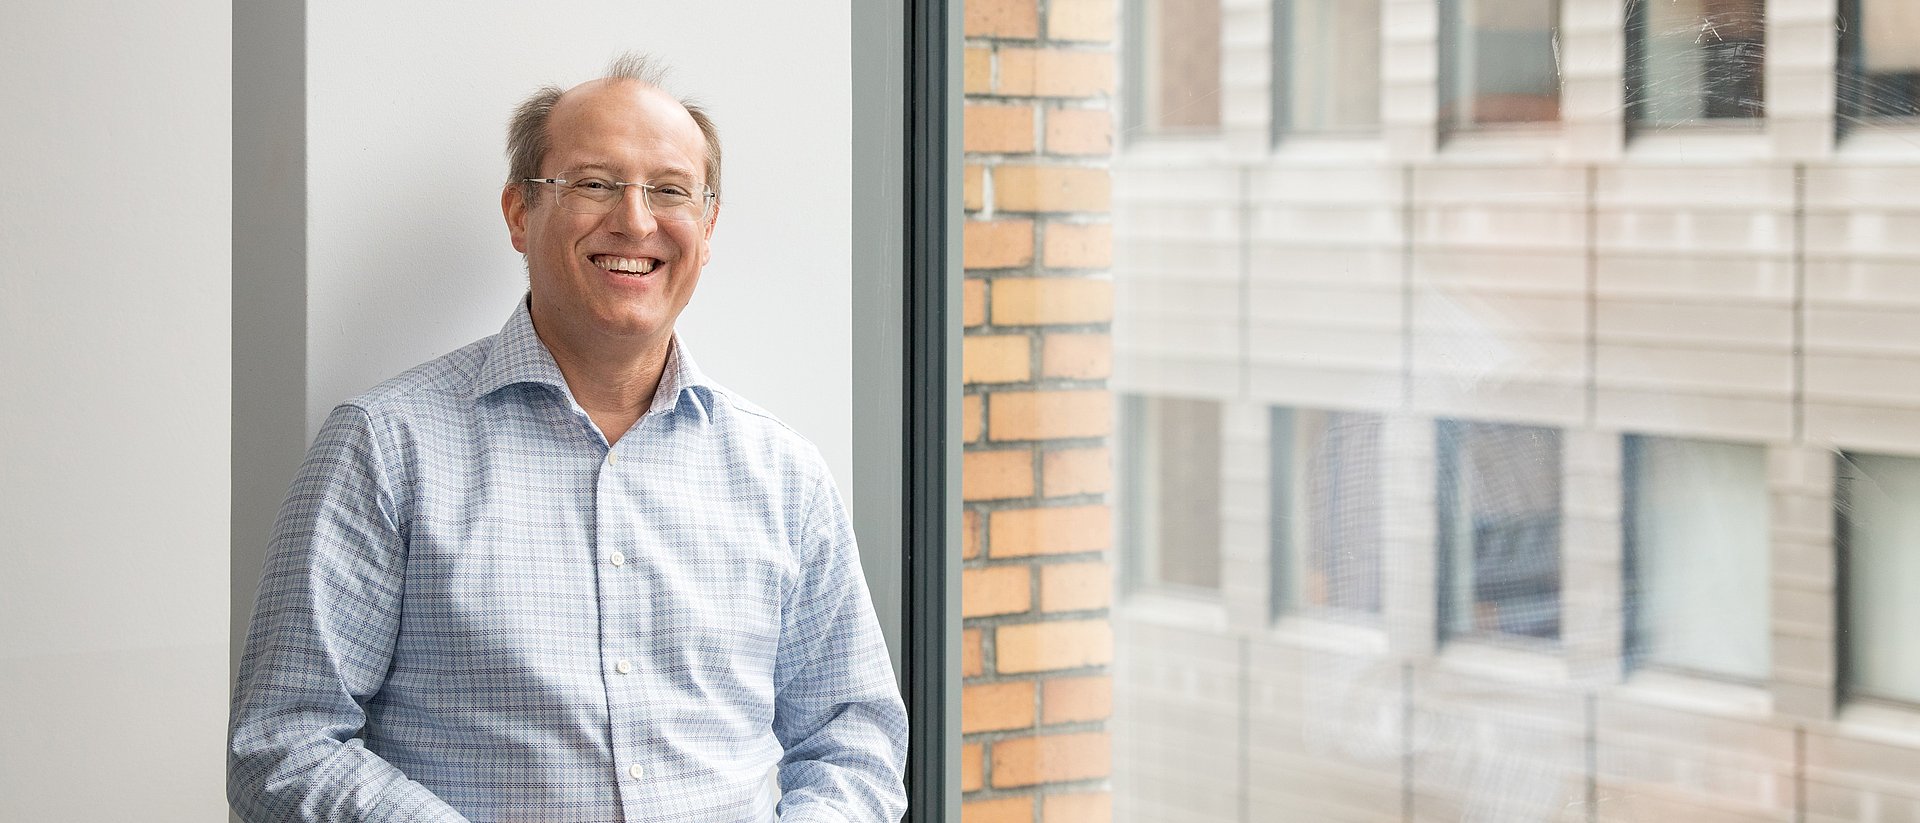 Prof. Gerhard Kramer steht lachend neben einem Fenster.